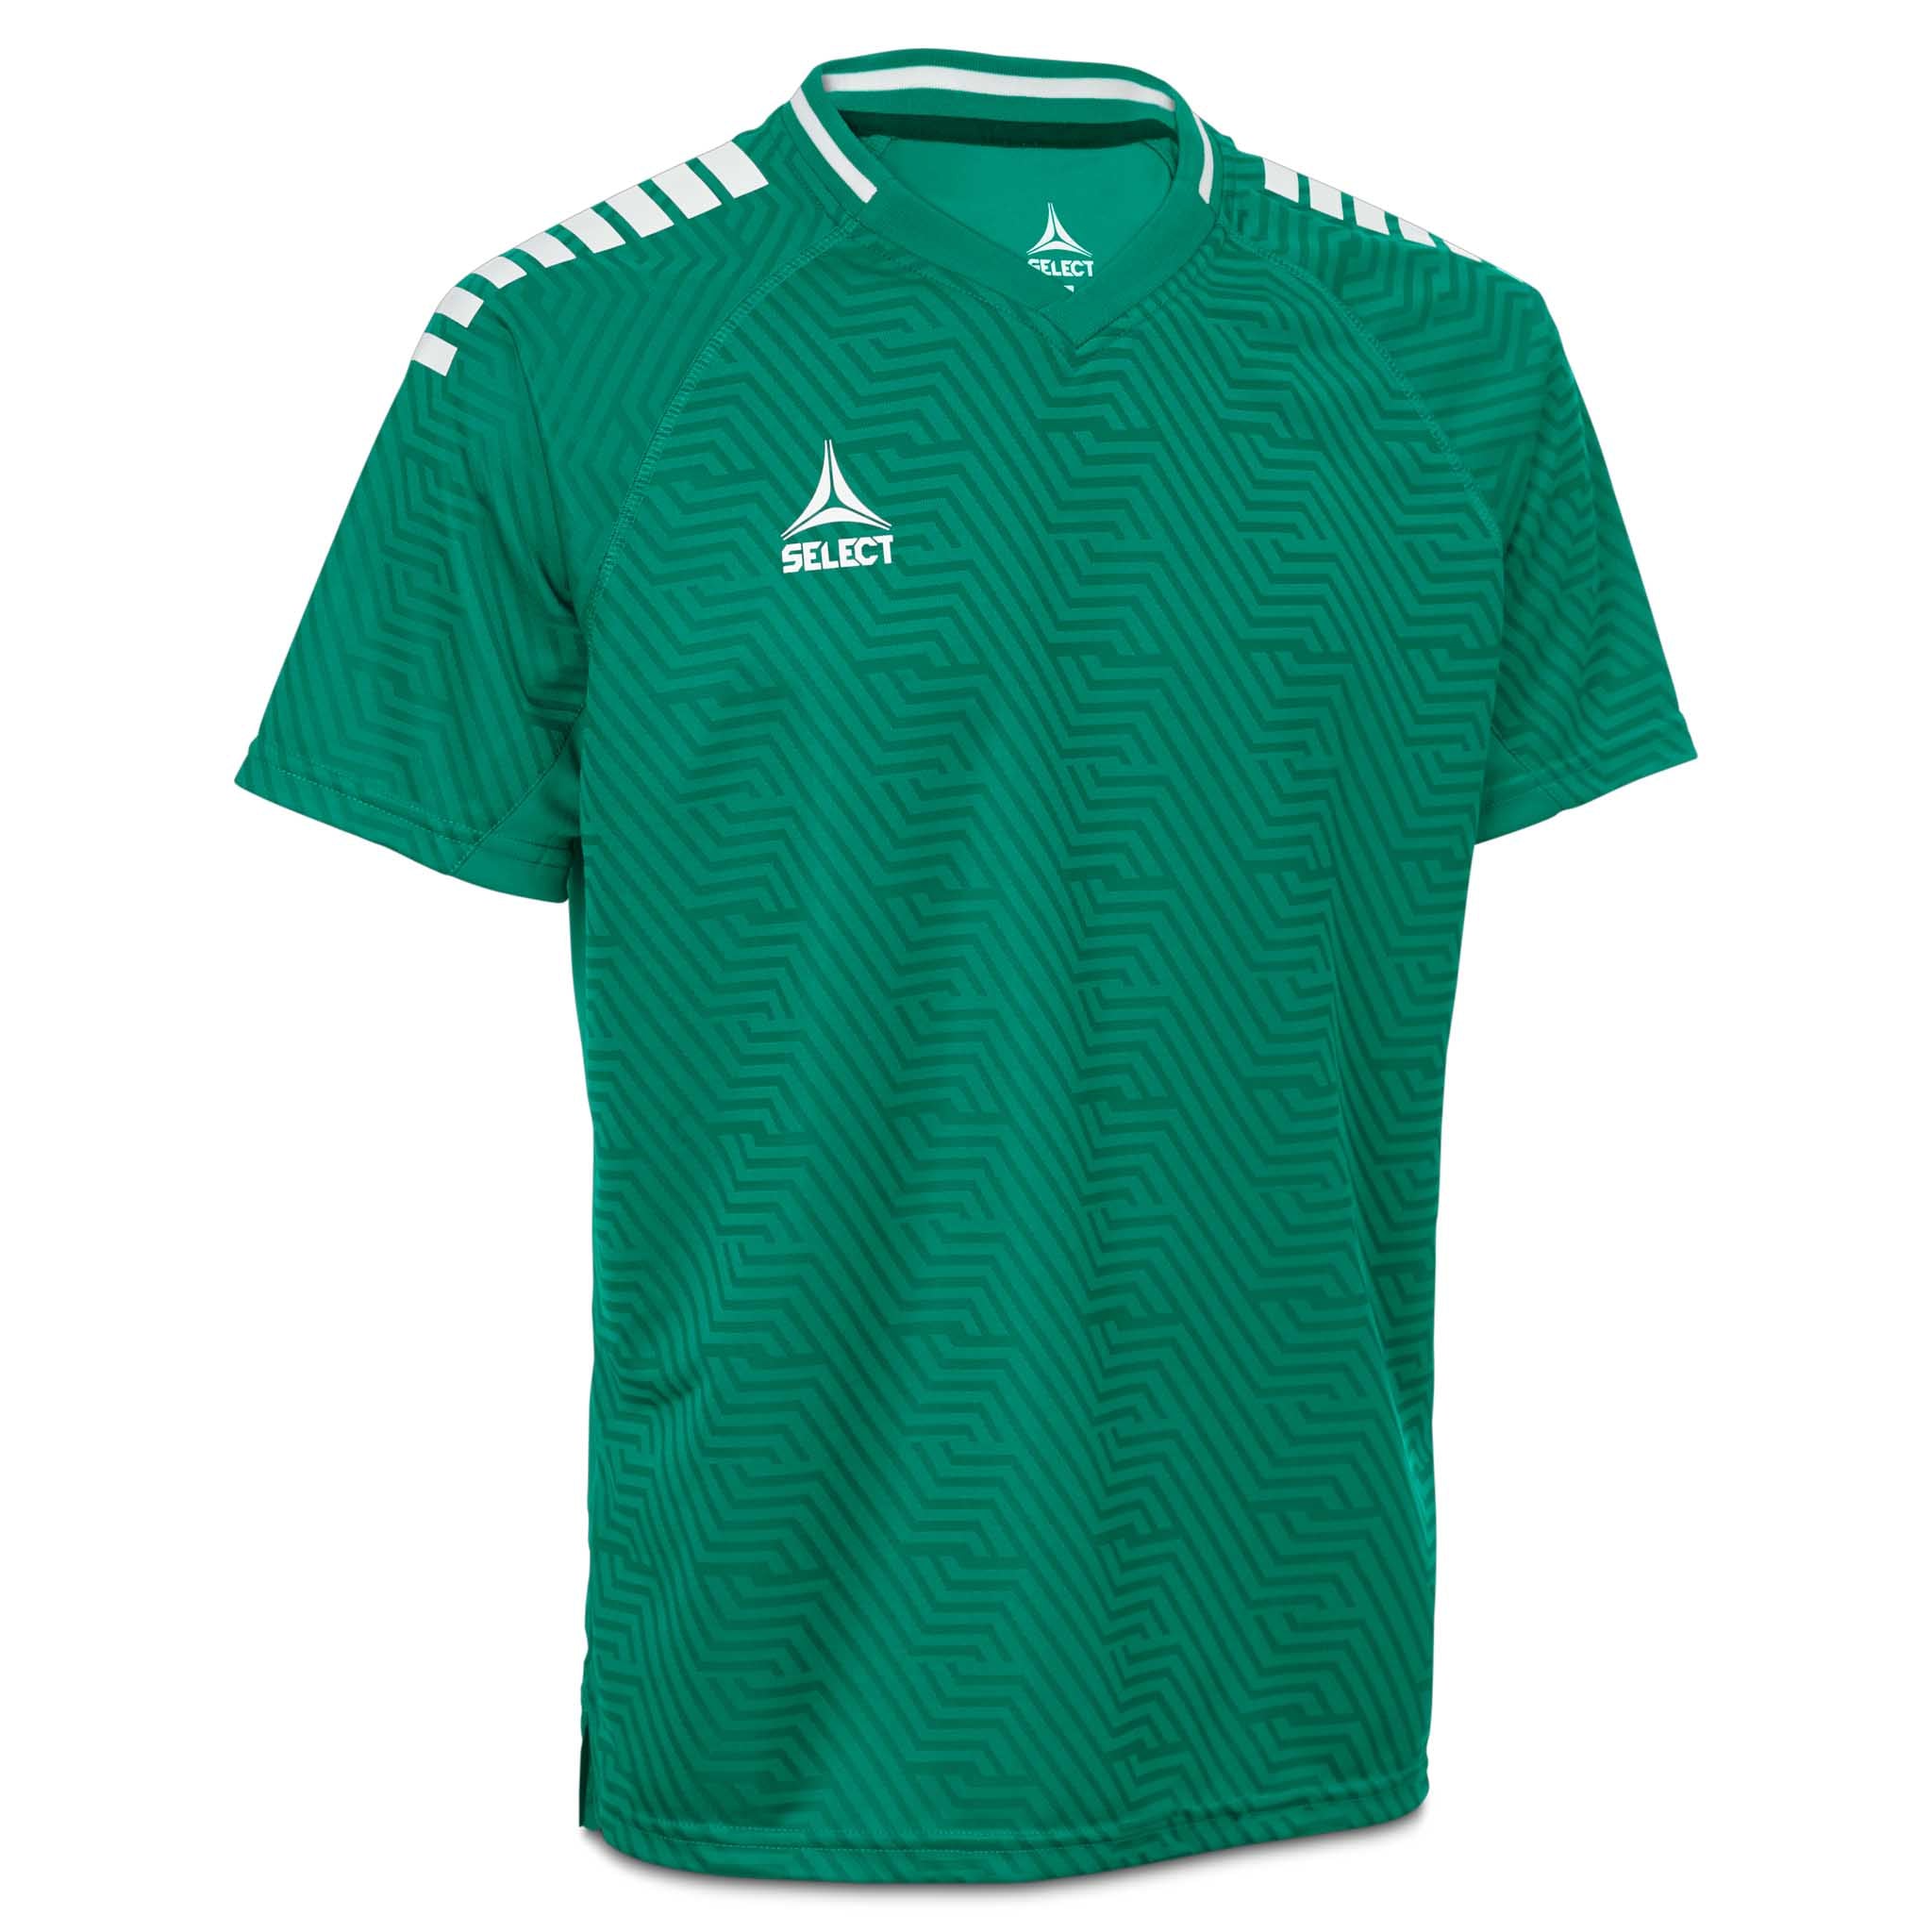 Monaco Player shirt S/S - Kids #colour_green/white